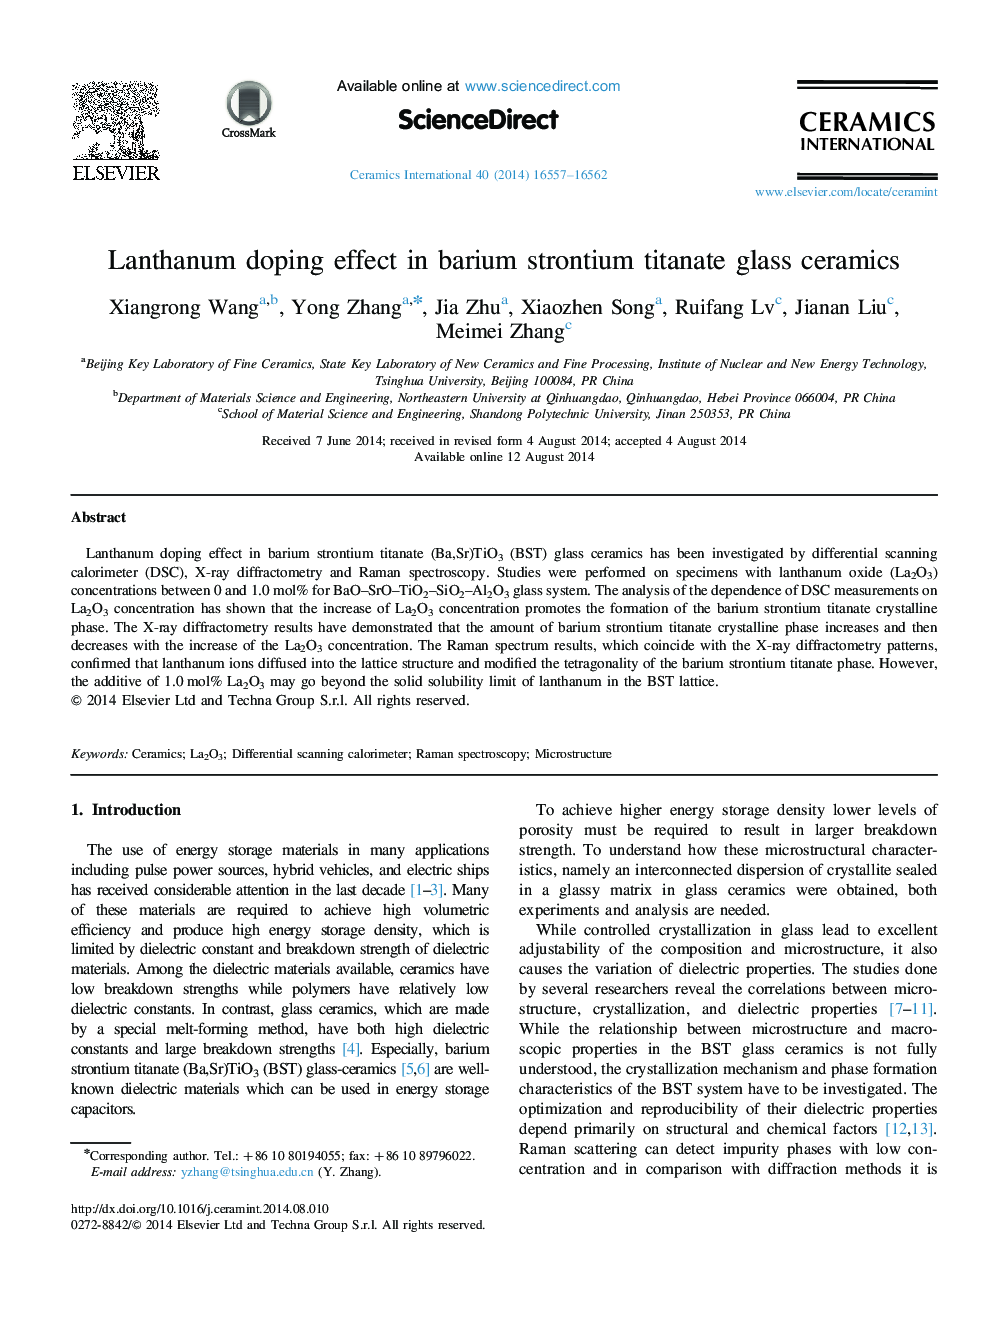 Lanthanum doping effect in barium strontium titanate glass ceramics